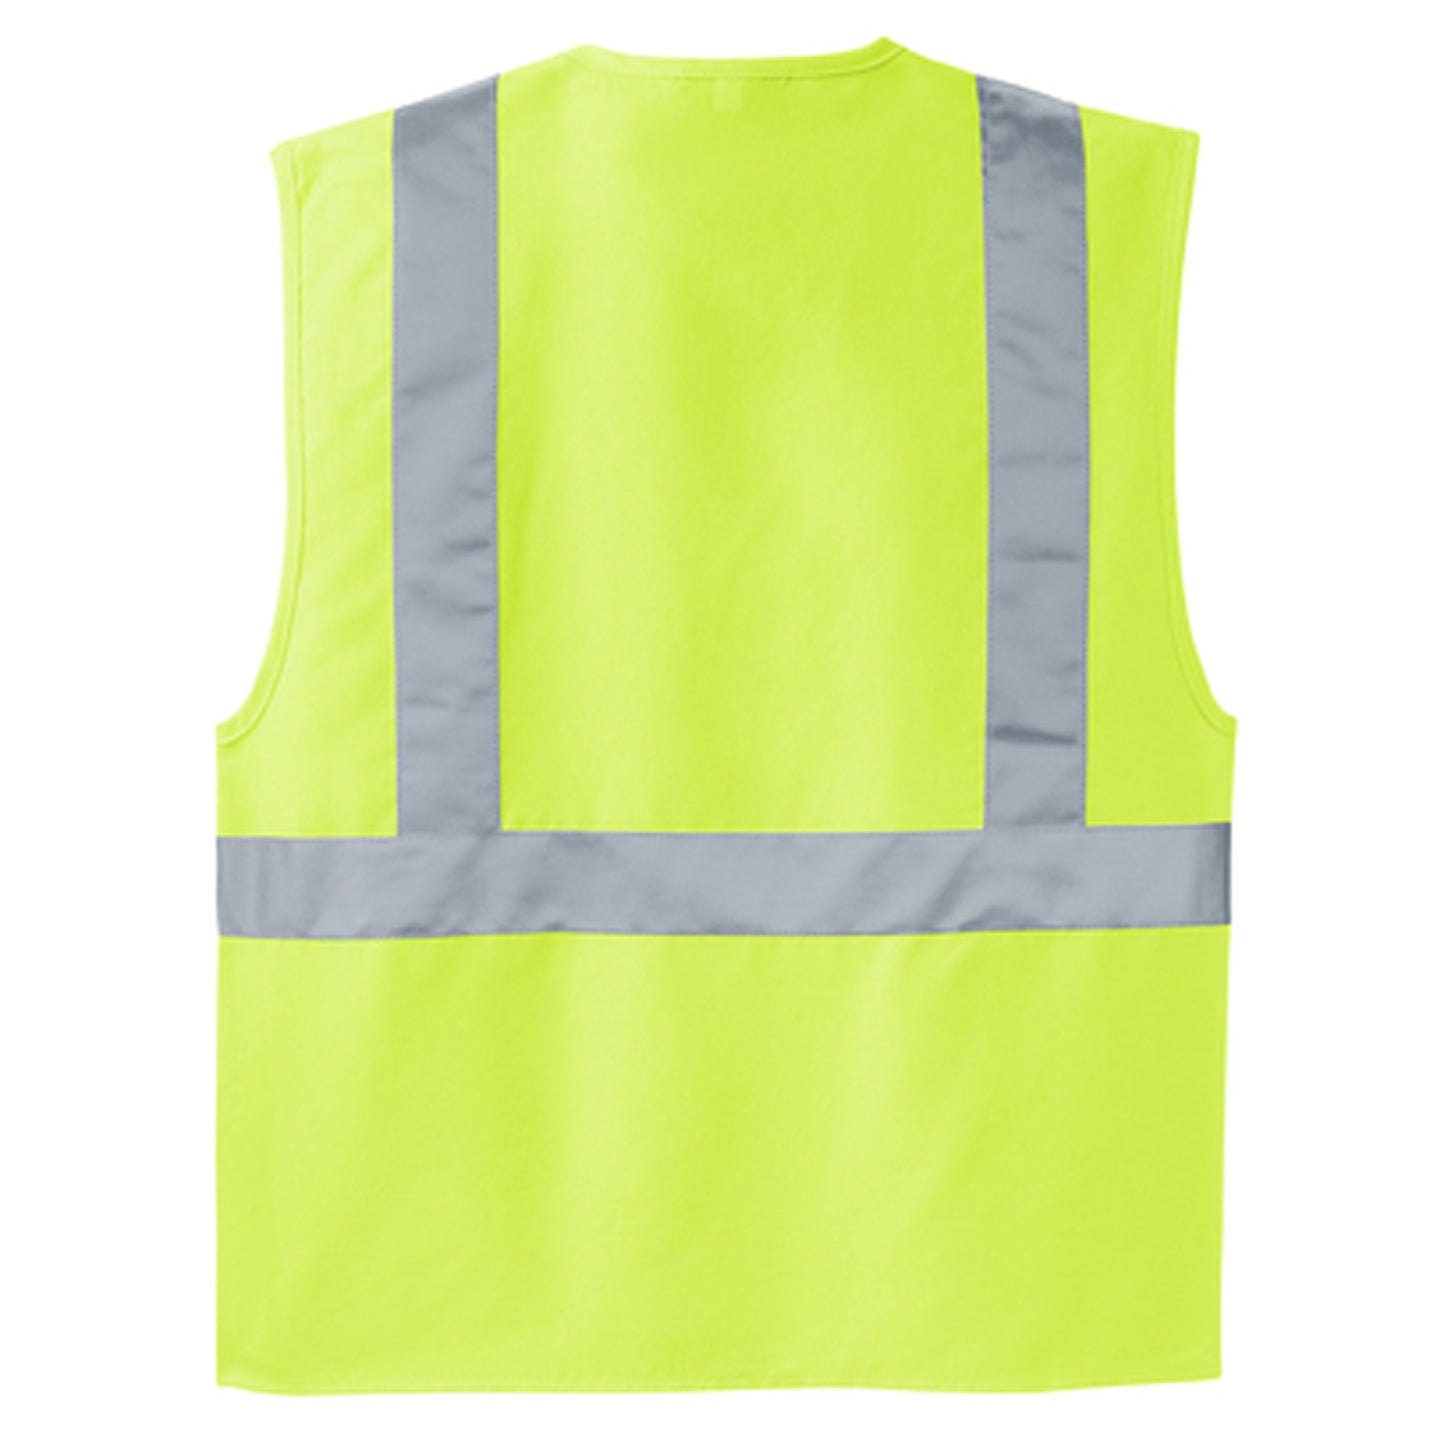 CornerStone - ANSI 107 Class 2 Safety Vest